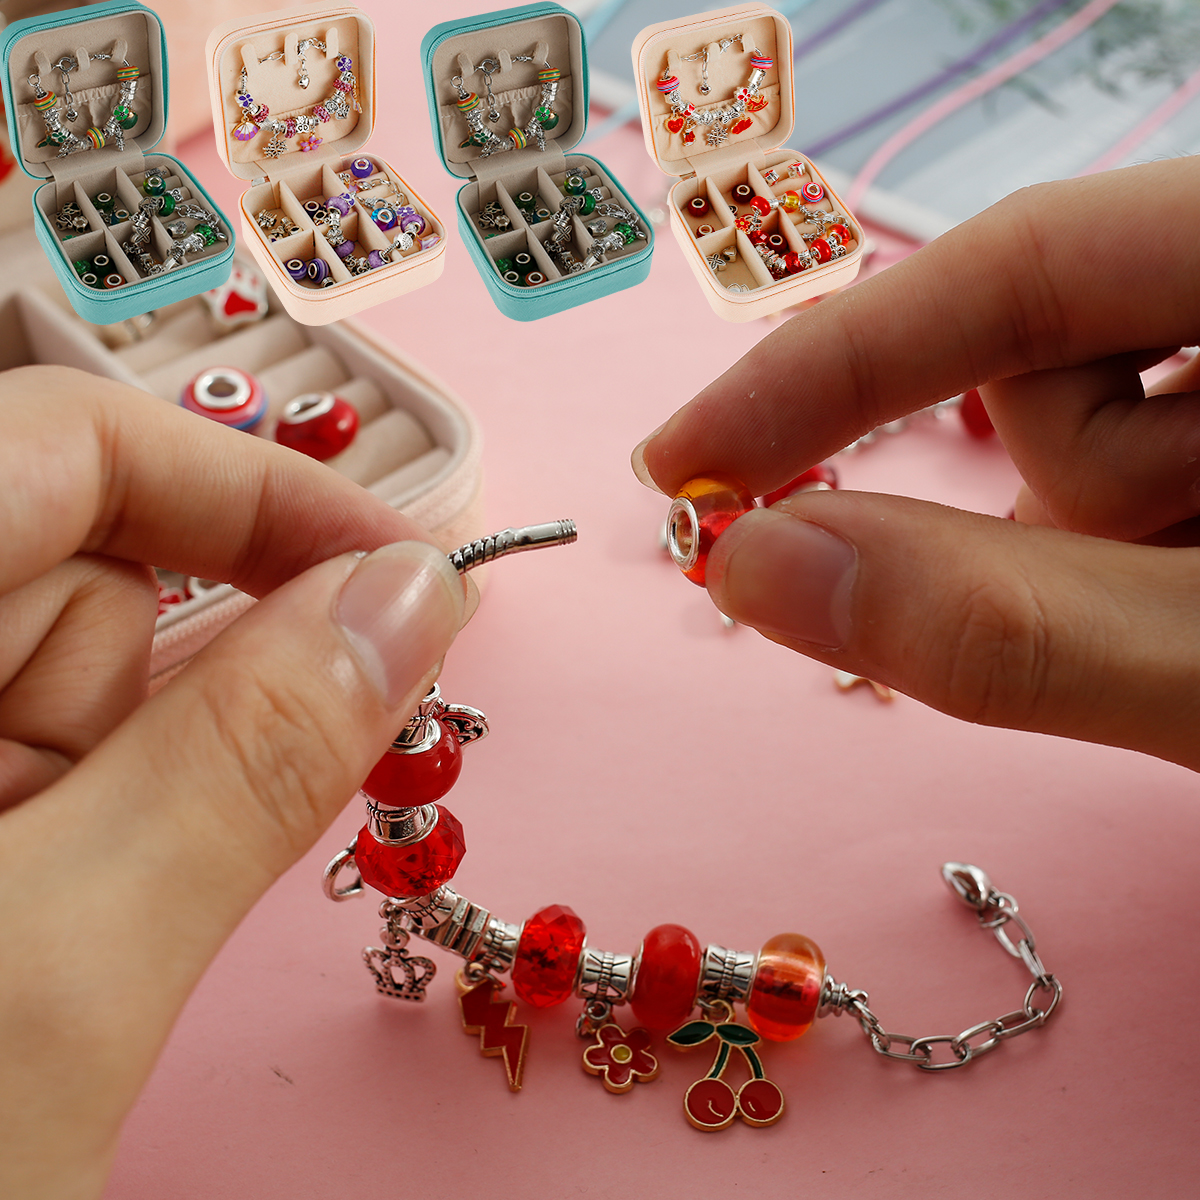 Charm Bracelet Making Kit, 66 Pcs Charm Bracelet Making Kit Jewelry Making  Supplies,diy Craft Gift Kit For Teen Girls